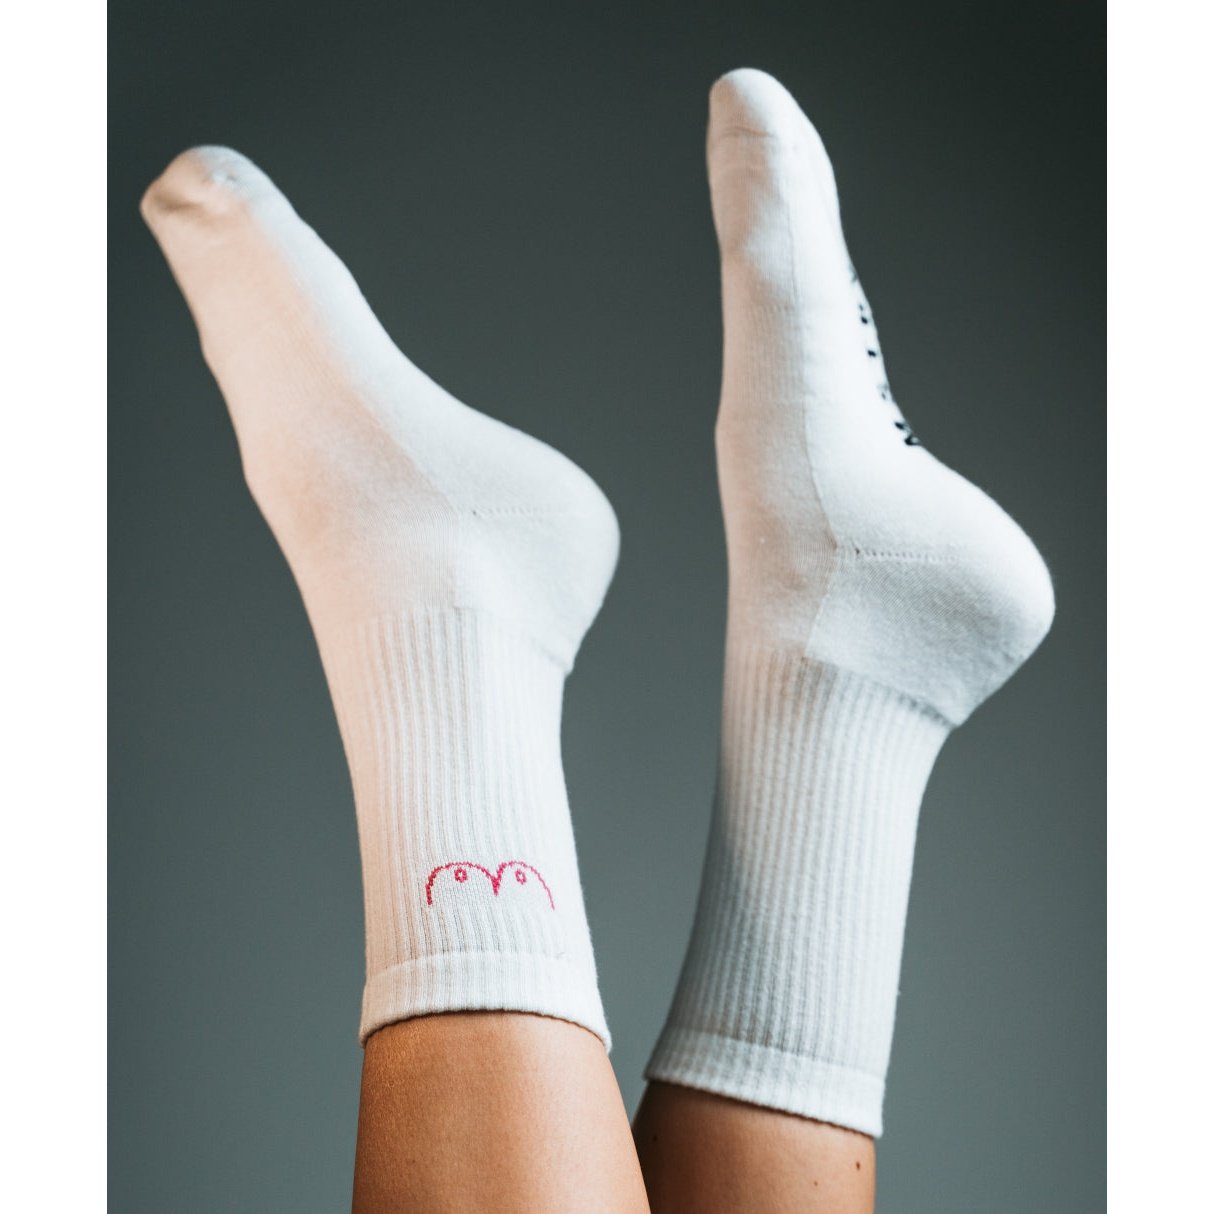 MSTRY Socken mit eingestricktem Statement